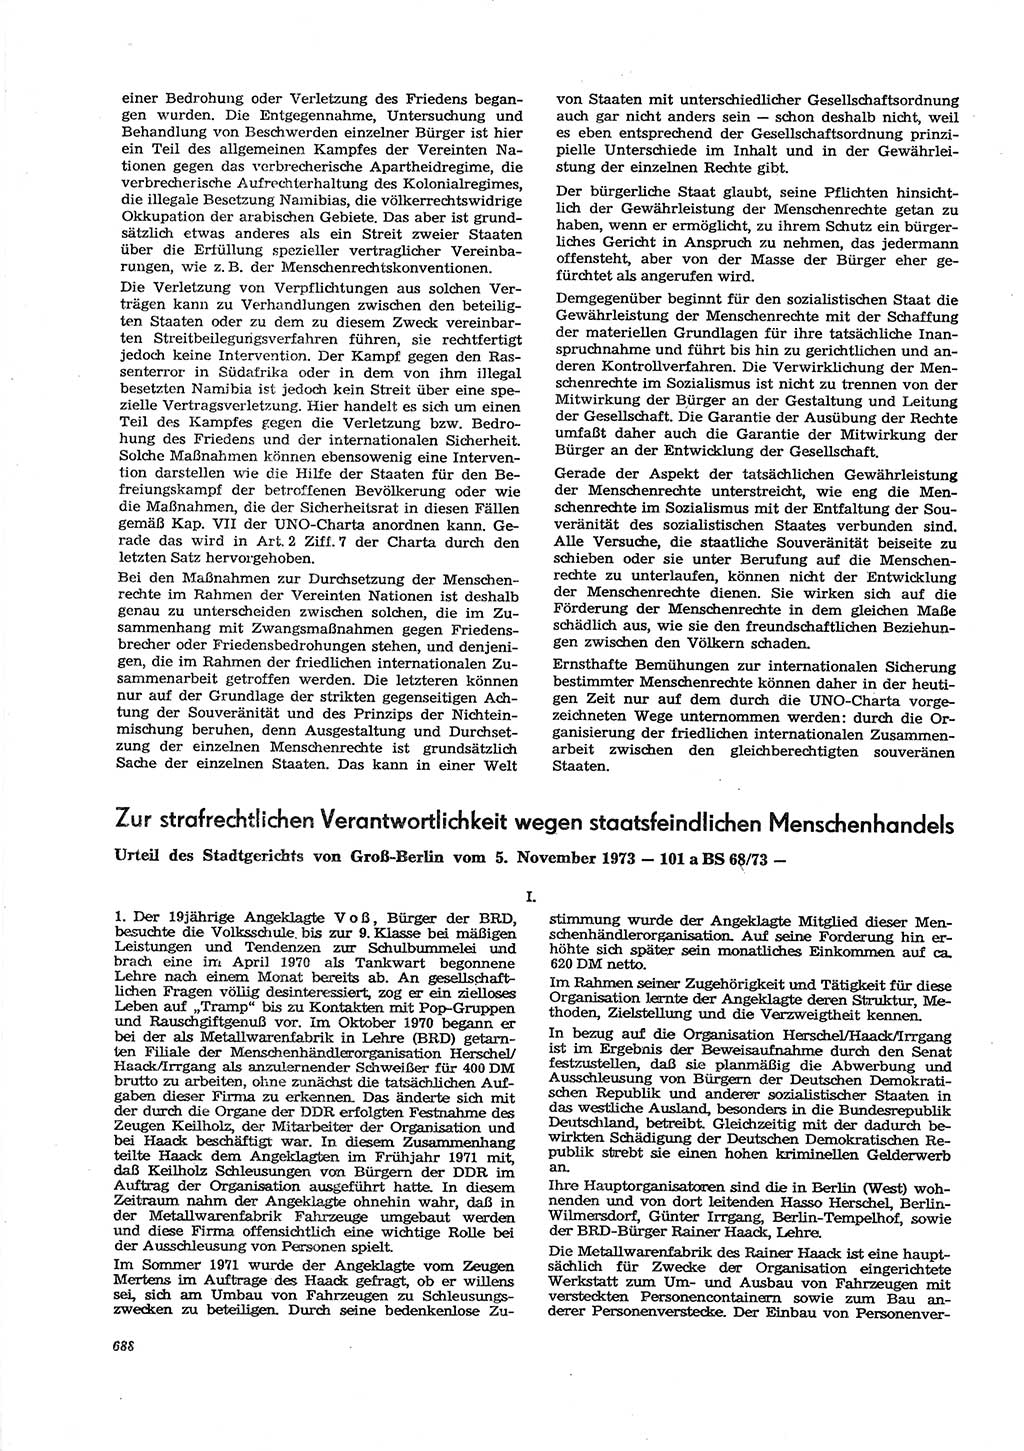 Neue Justiz (NJ), Zeitschrift für Recht und Rechtswissenschaft [Deutsche Demokratische Republik (DDR)], 27. Jahrgang 1973, Seite 688 (NJ DDR 1973, S. 688)